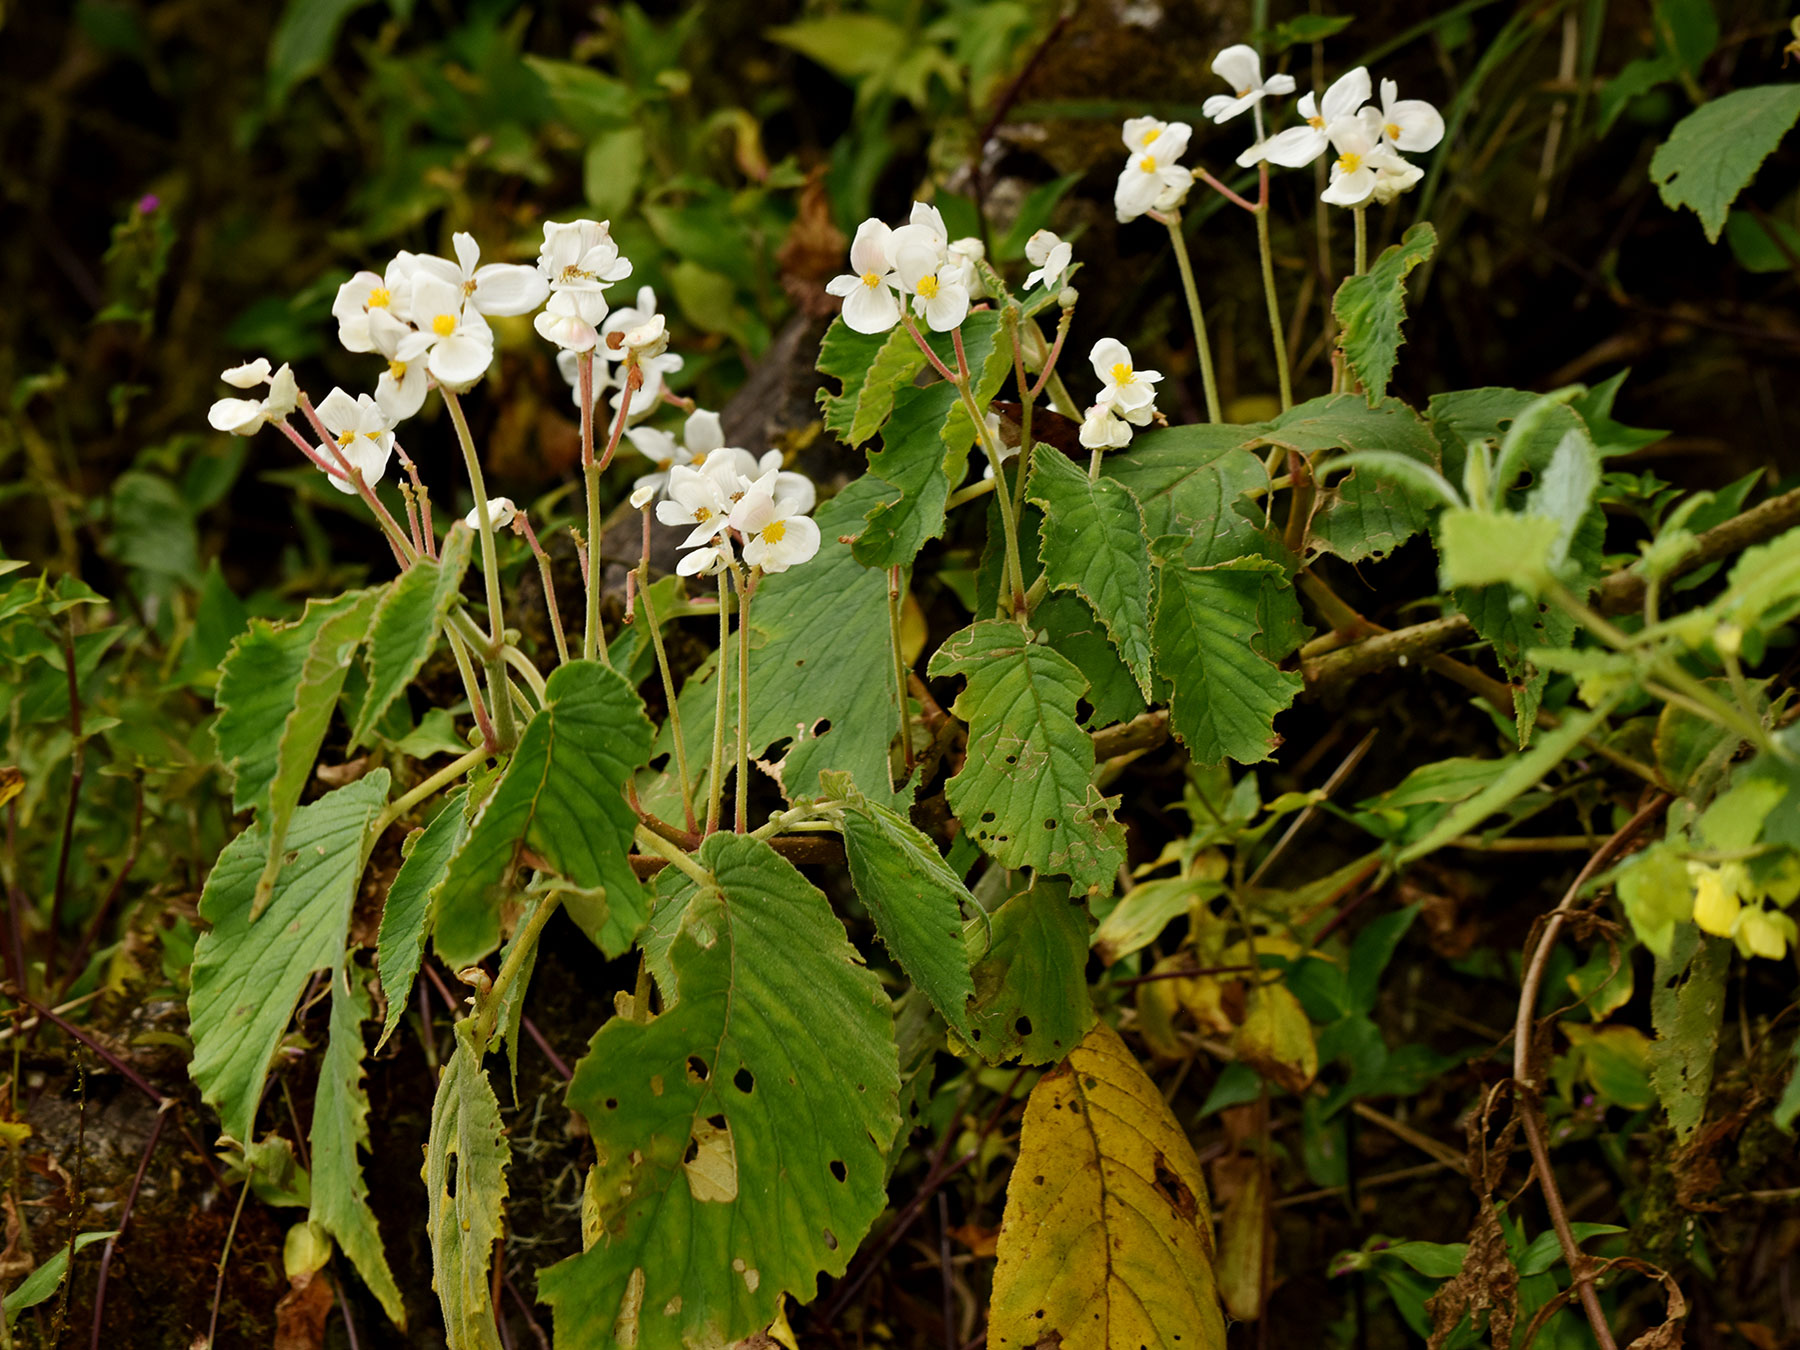 Begonia wilburii, especie endémica de Costa Rica y Oeste de Panamá